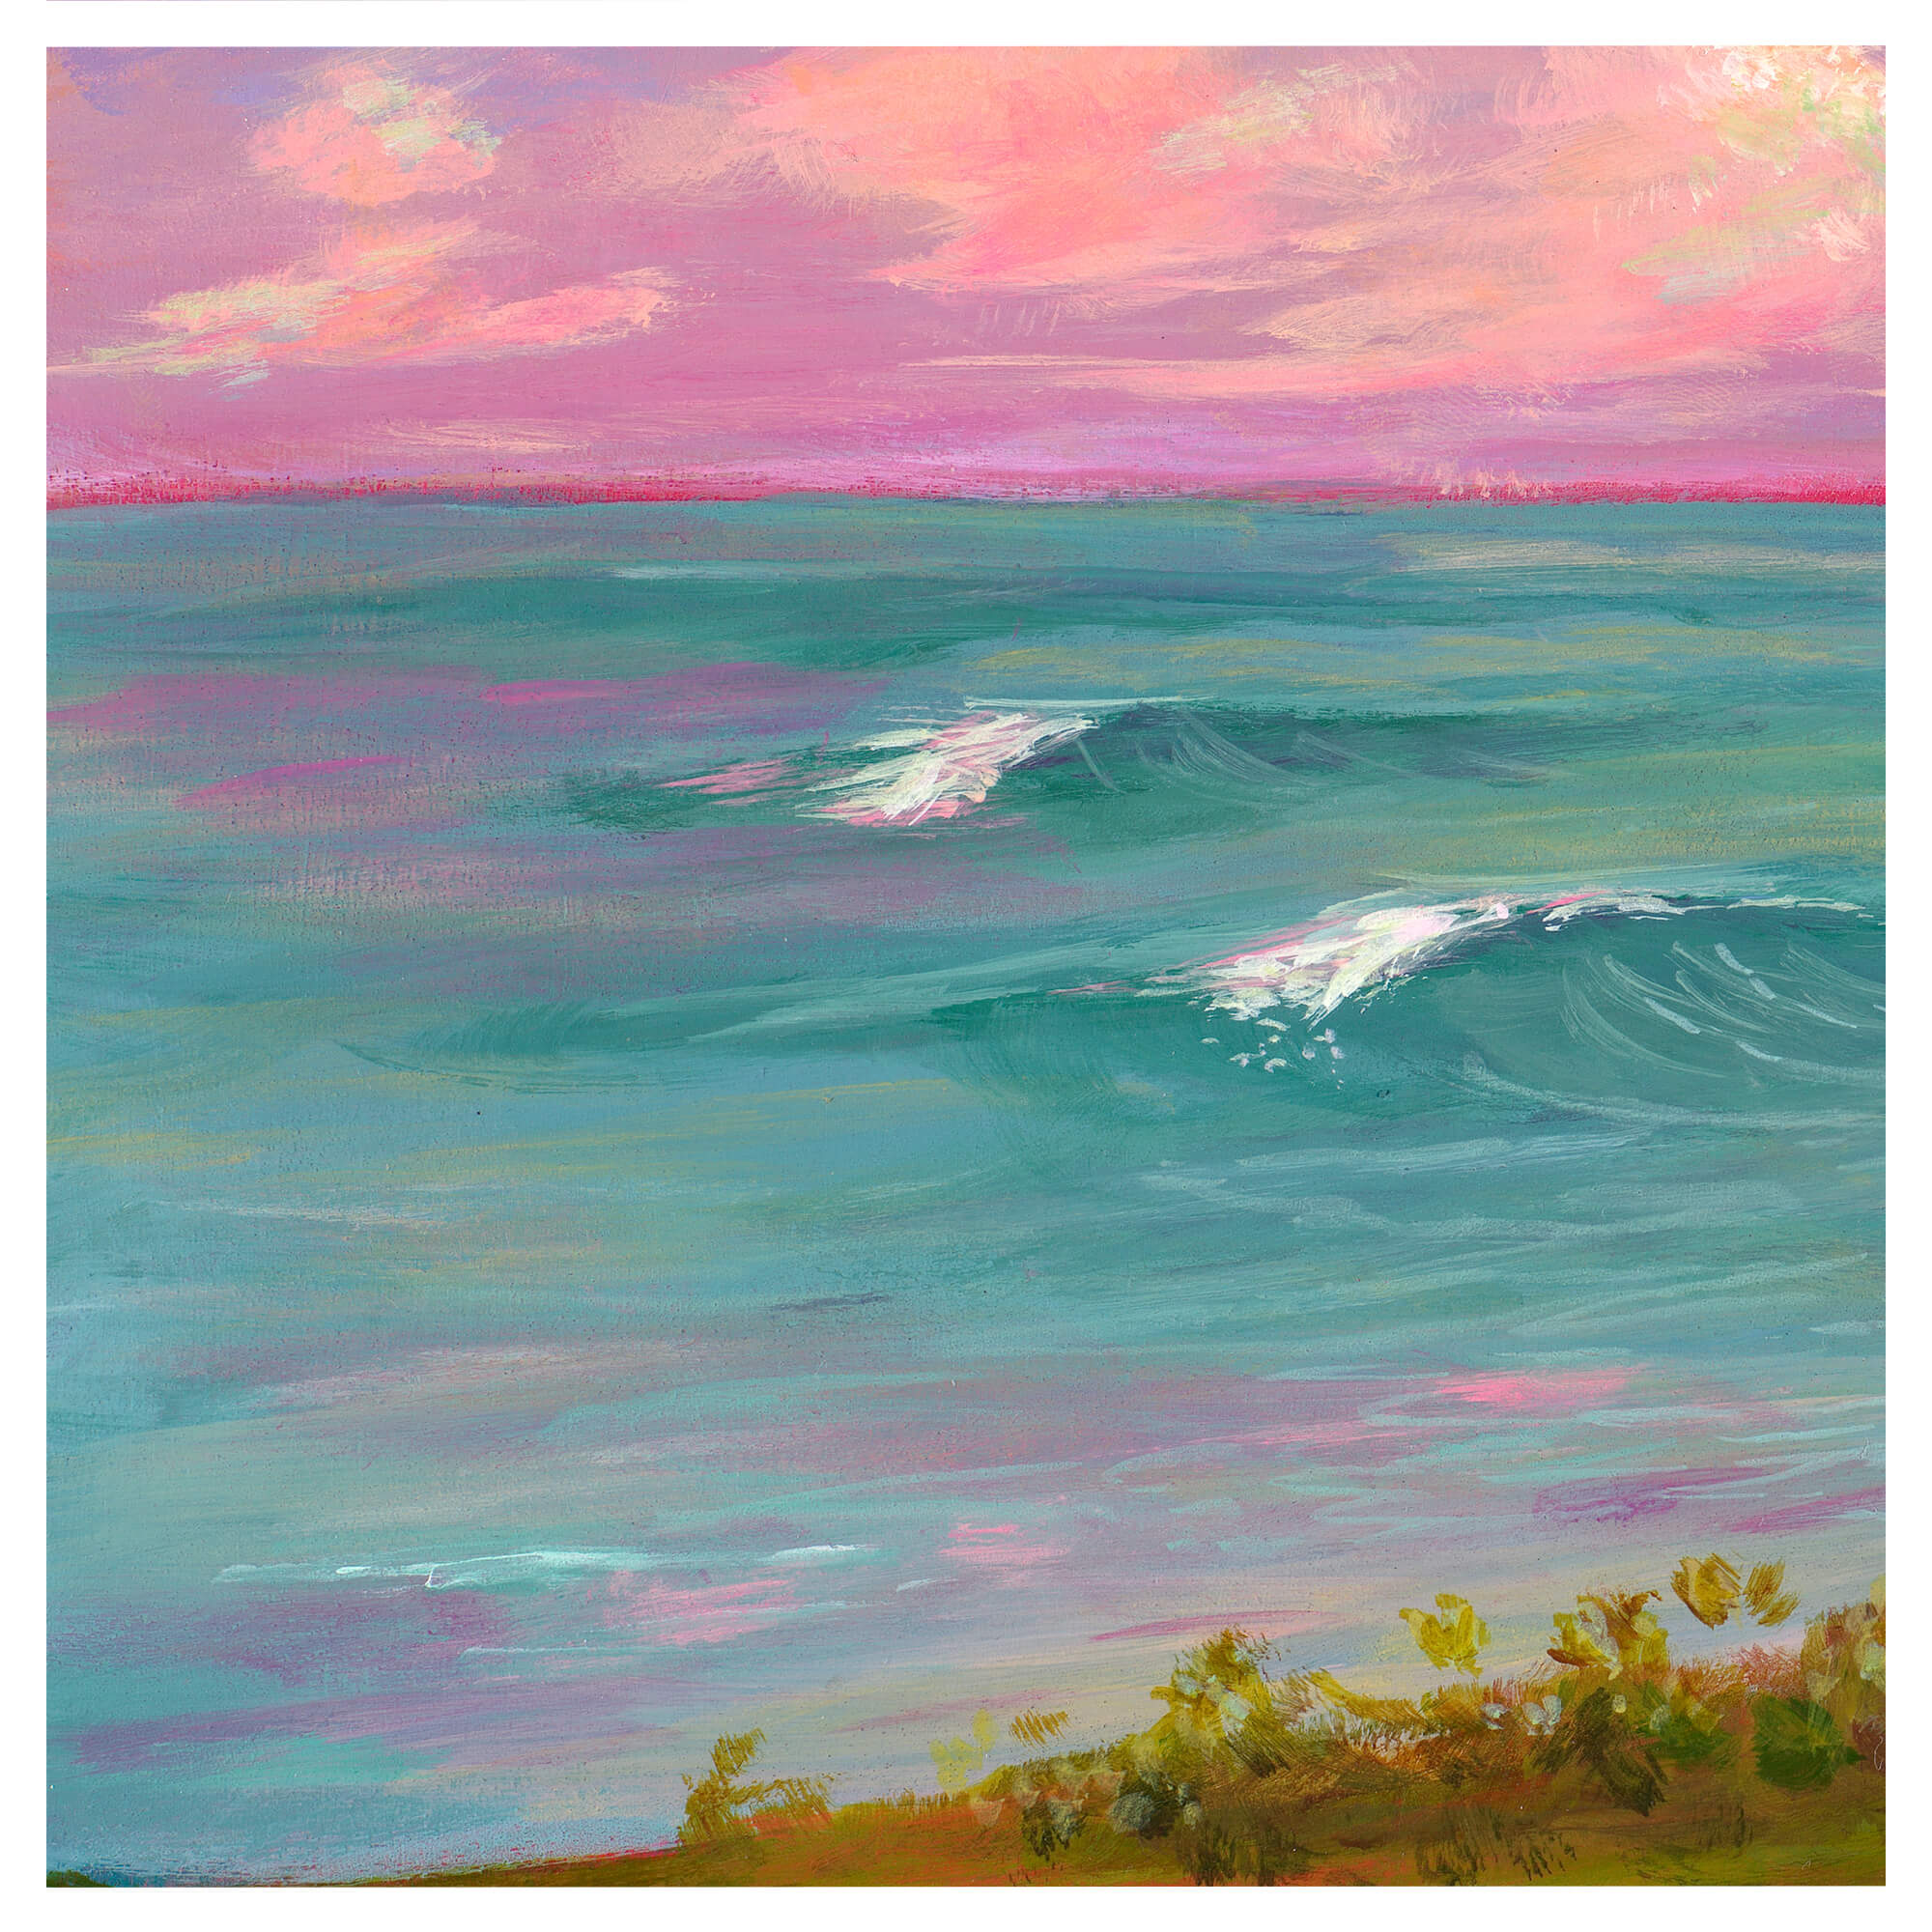 Teal ocean and pink sky by Hawaii artist Lindsay Wilkins